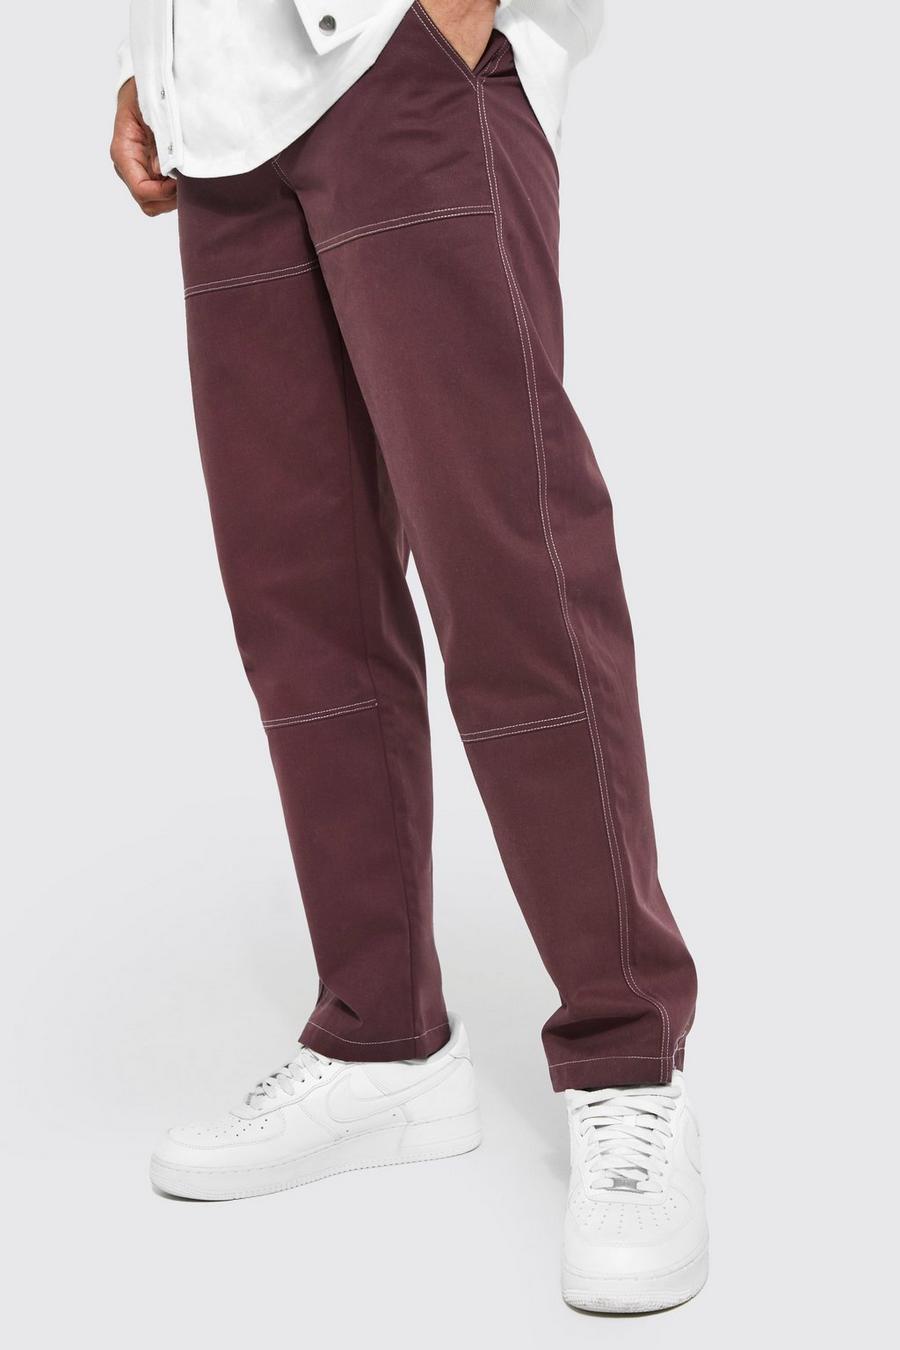 Pantalon droit à coutures contrastantes, Chocolate brown